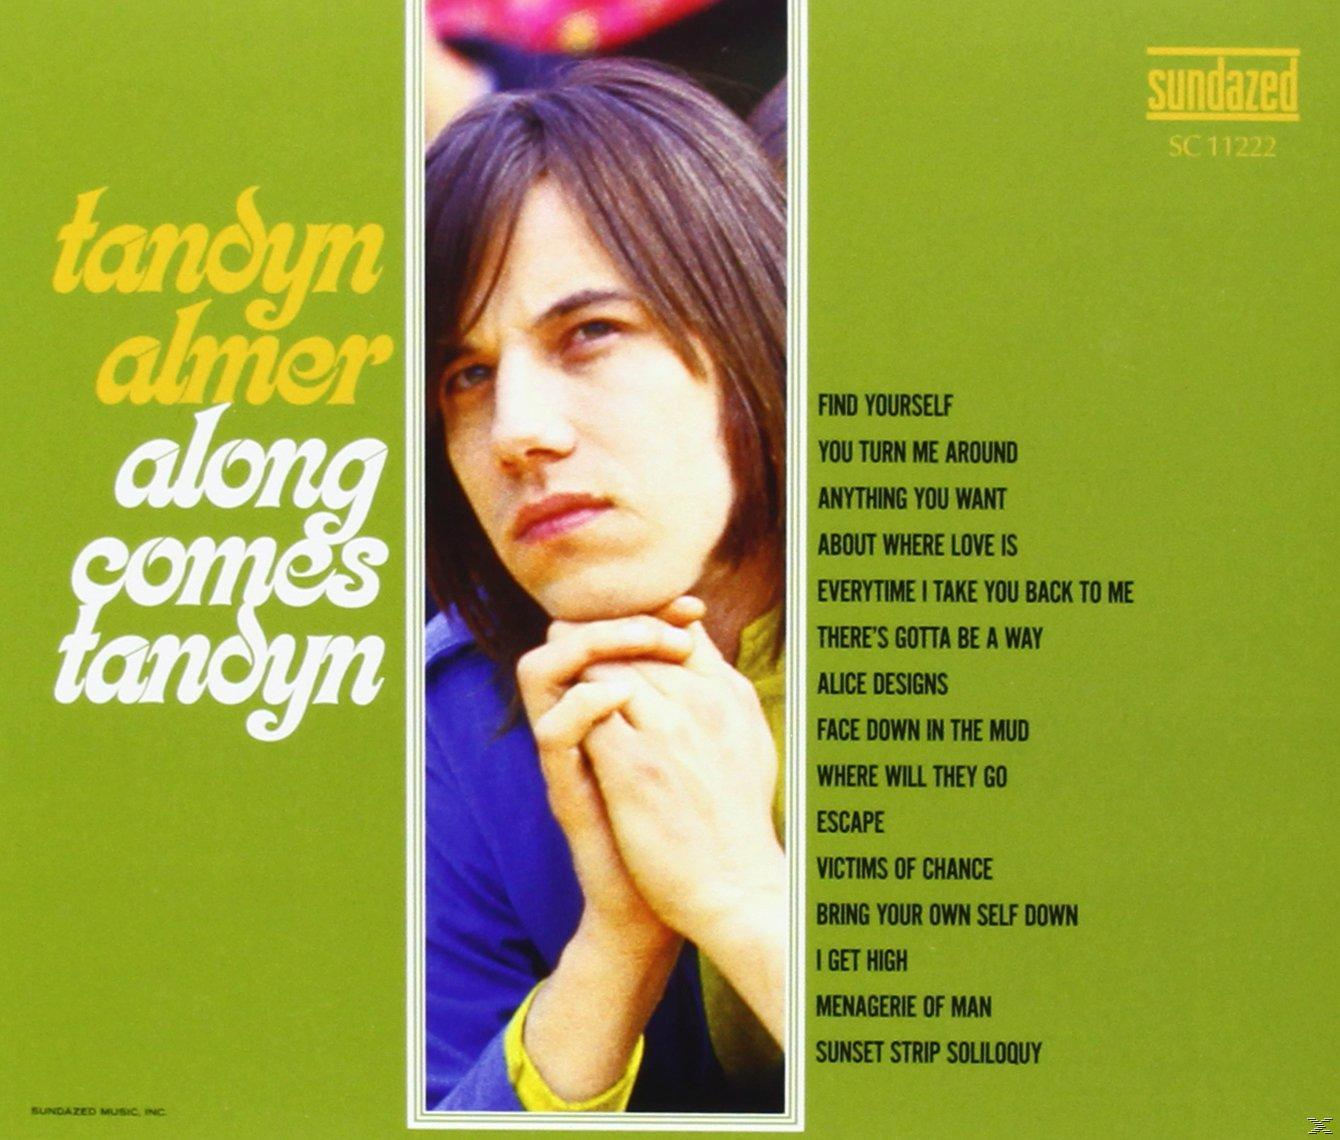 Tandyn Comes (CD) Tandyn - Along - Almer